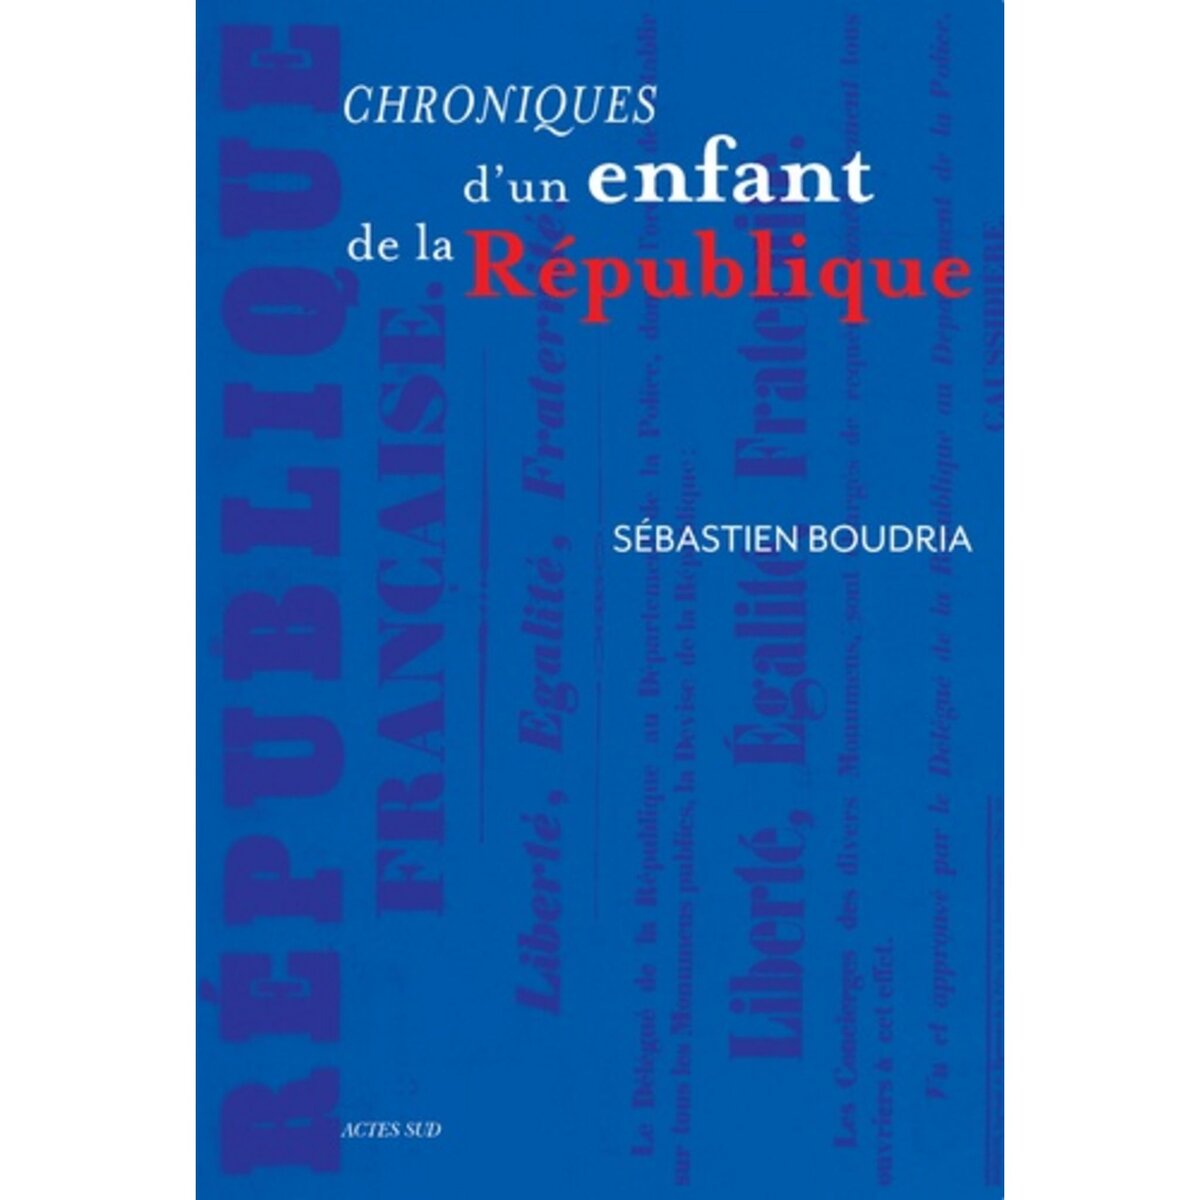  CHRONIQUES D'UN ENFANT DE LA REPUBLIQUE, Boudria Sébastien